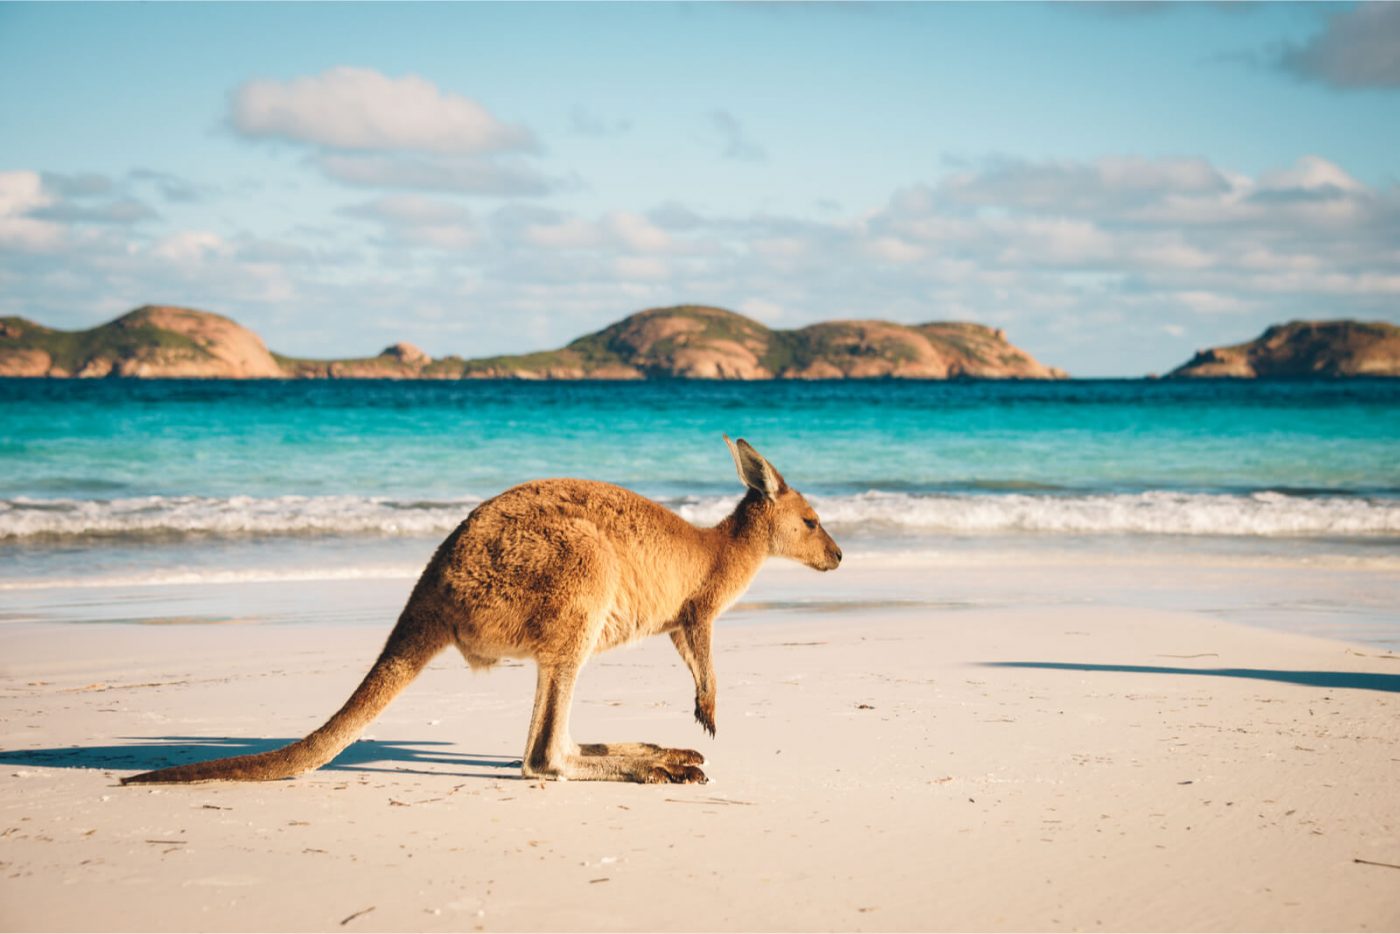 cruise to australia for wildlife